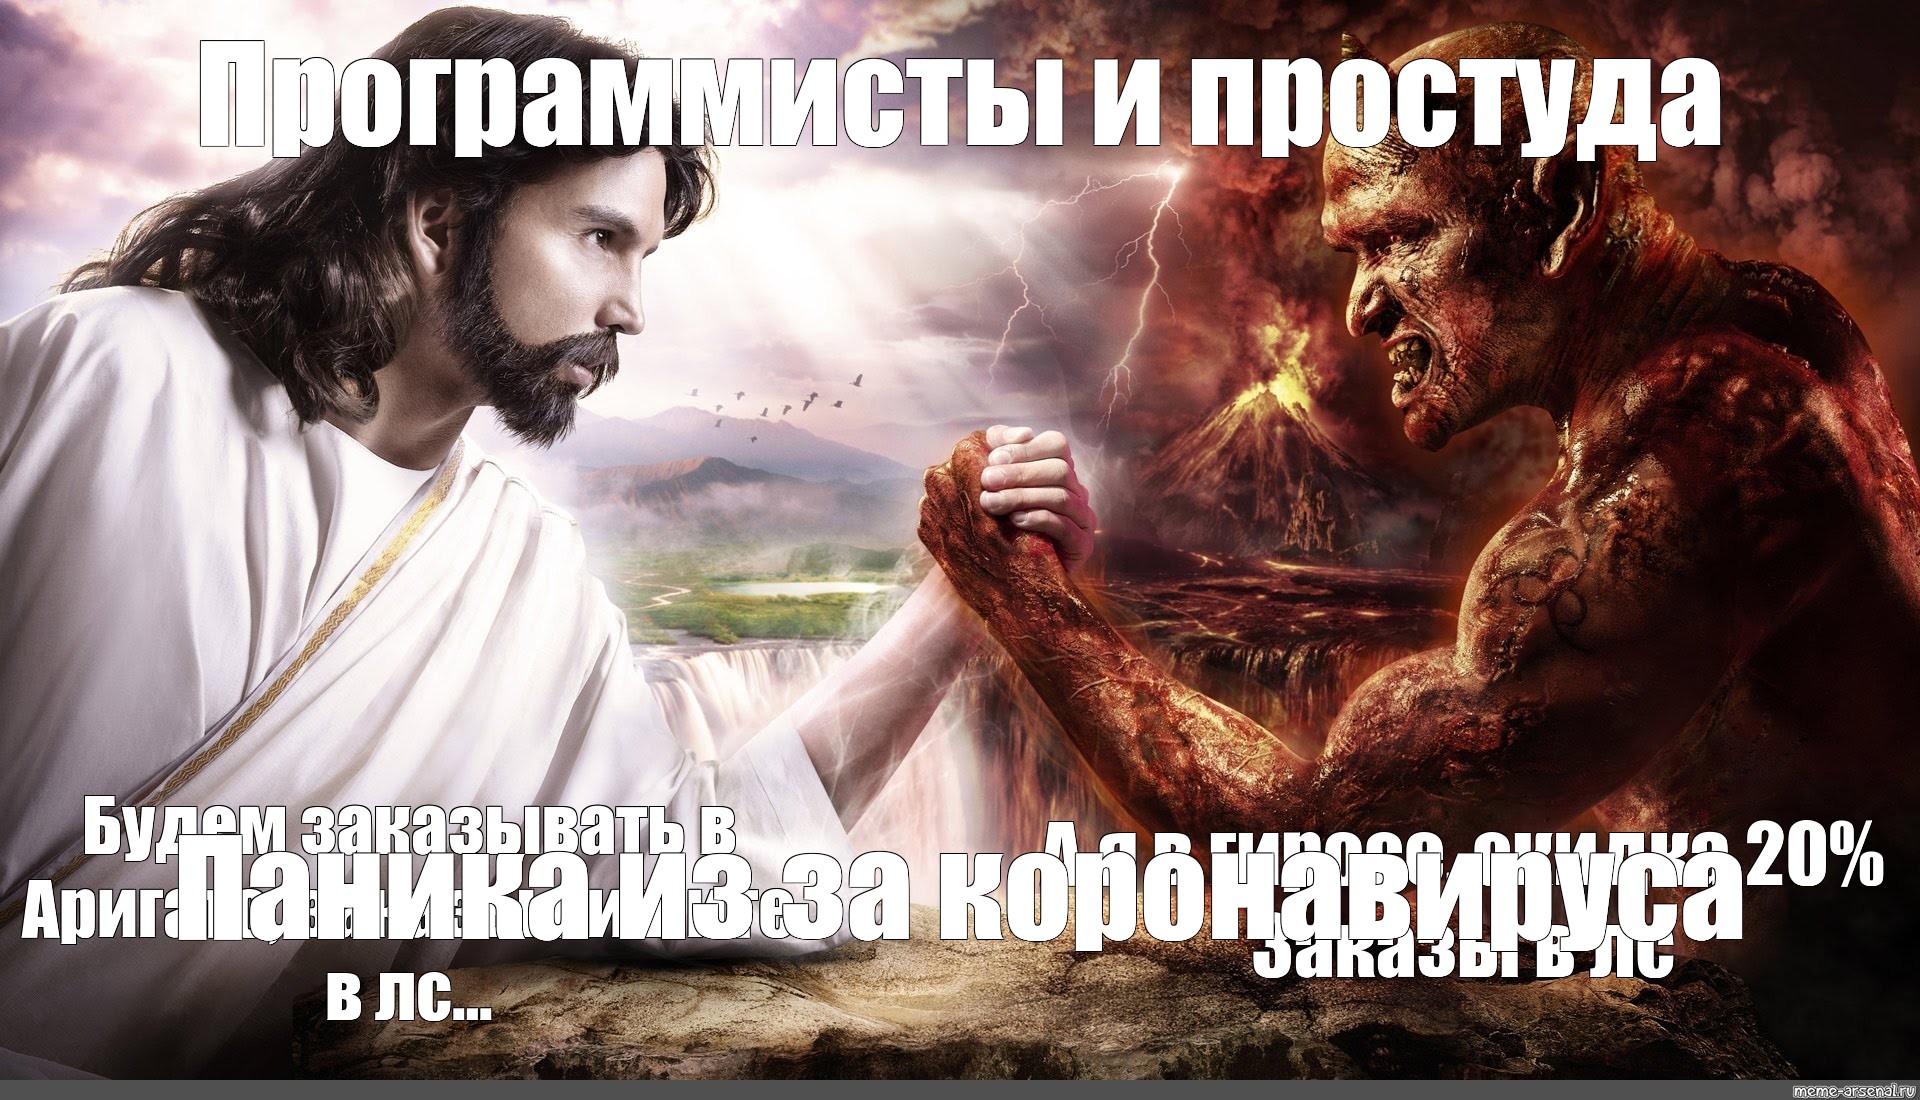 Дьявол и Бог борятся на руках